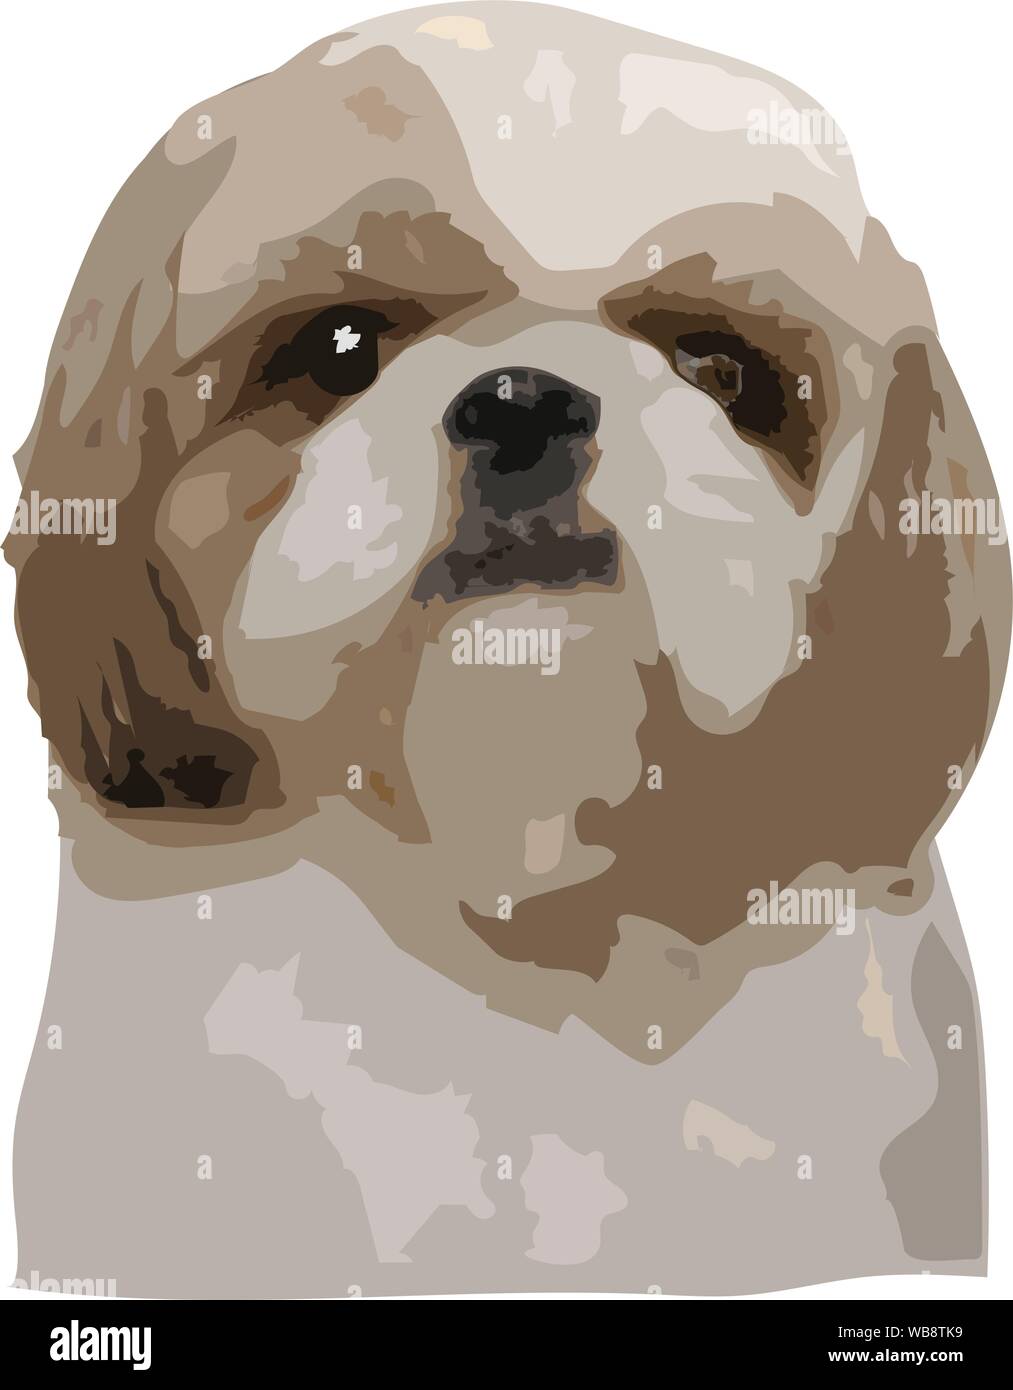 Angesichts der Shih Tzu Hund gerade starrt, Illustration Vektorgrafik pop art auf weißem Hintergrund - PET-Vektor Zeichnung Konzept Stock Vektor